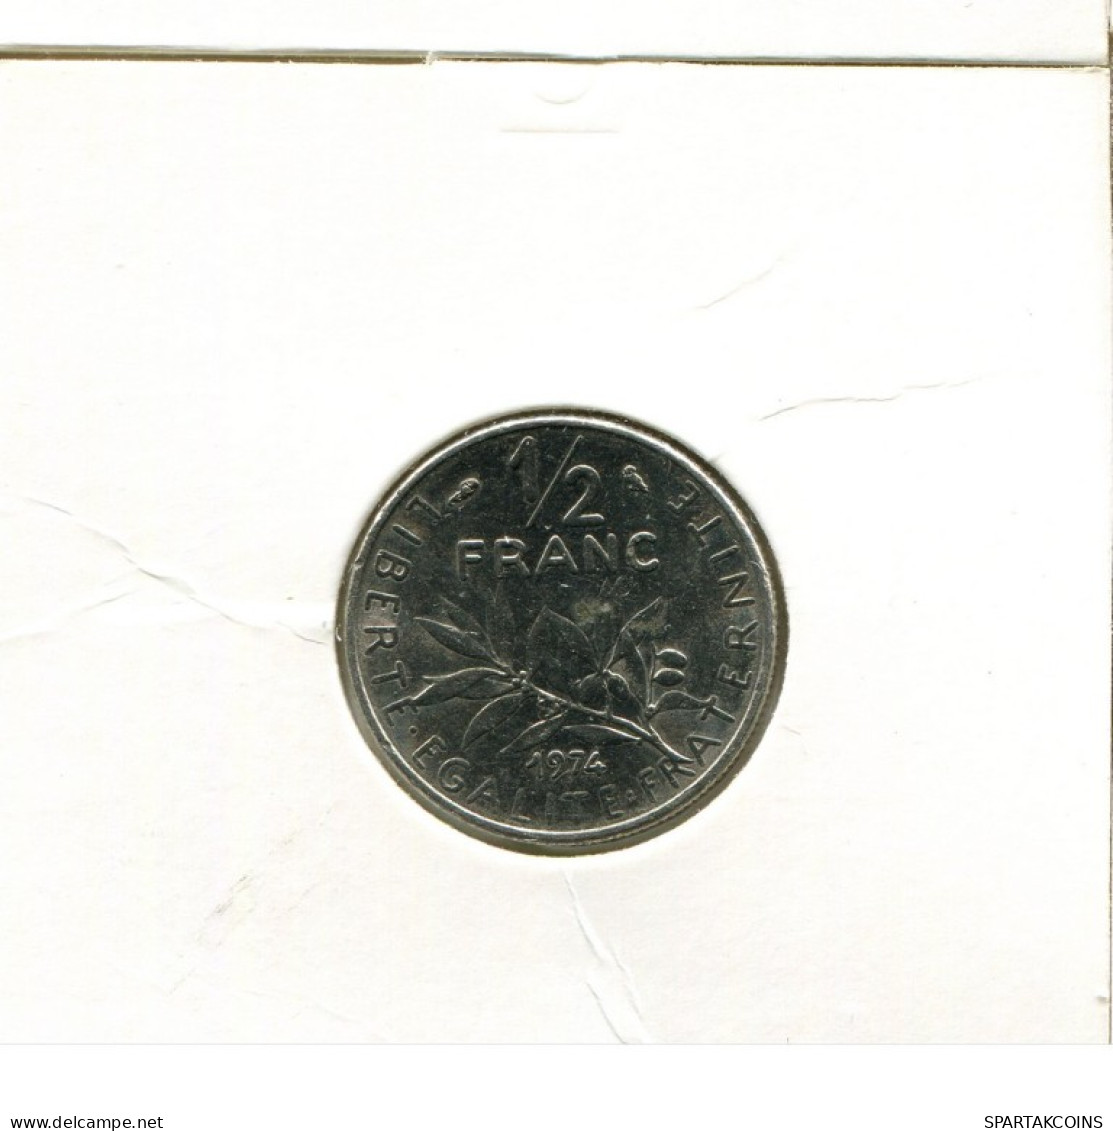 1/2 FRANC 1974 FRANCE Coin French Coin #AK495.U.A - 1/2 Franc